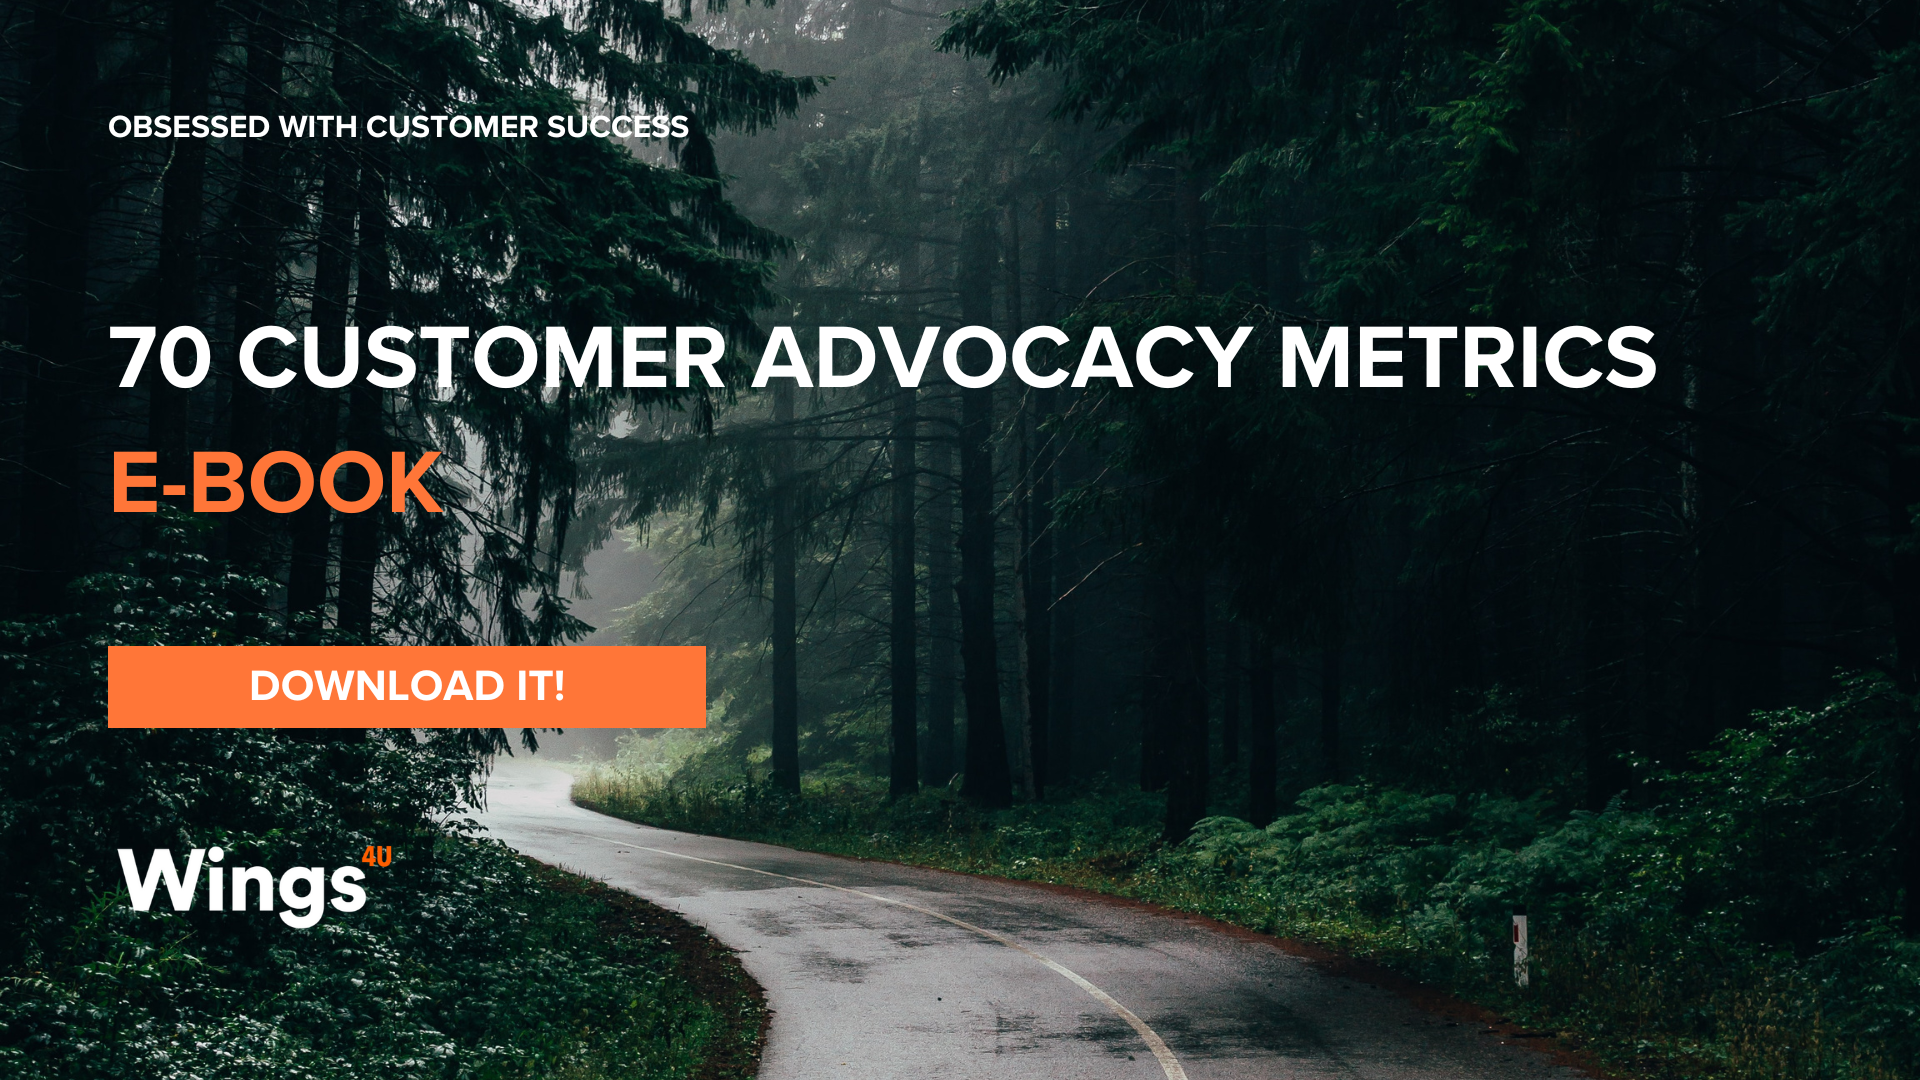 70 Customer Advocacy metrics E-BOOK (Presentación)